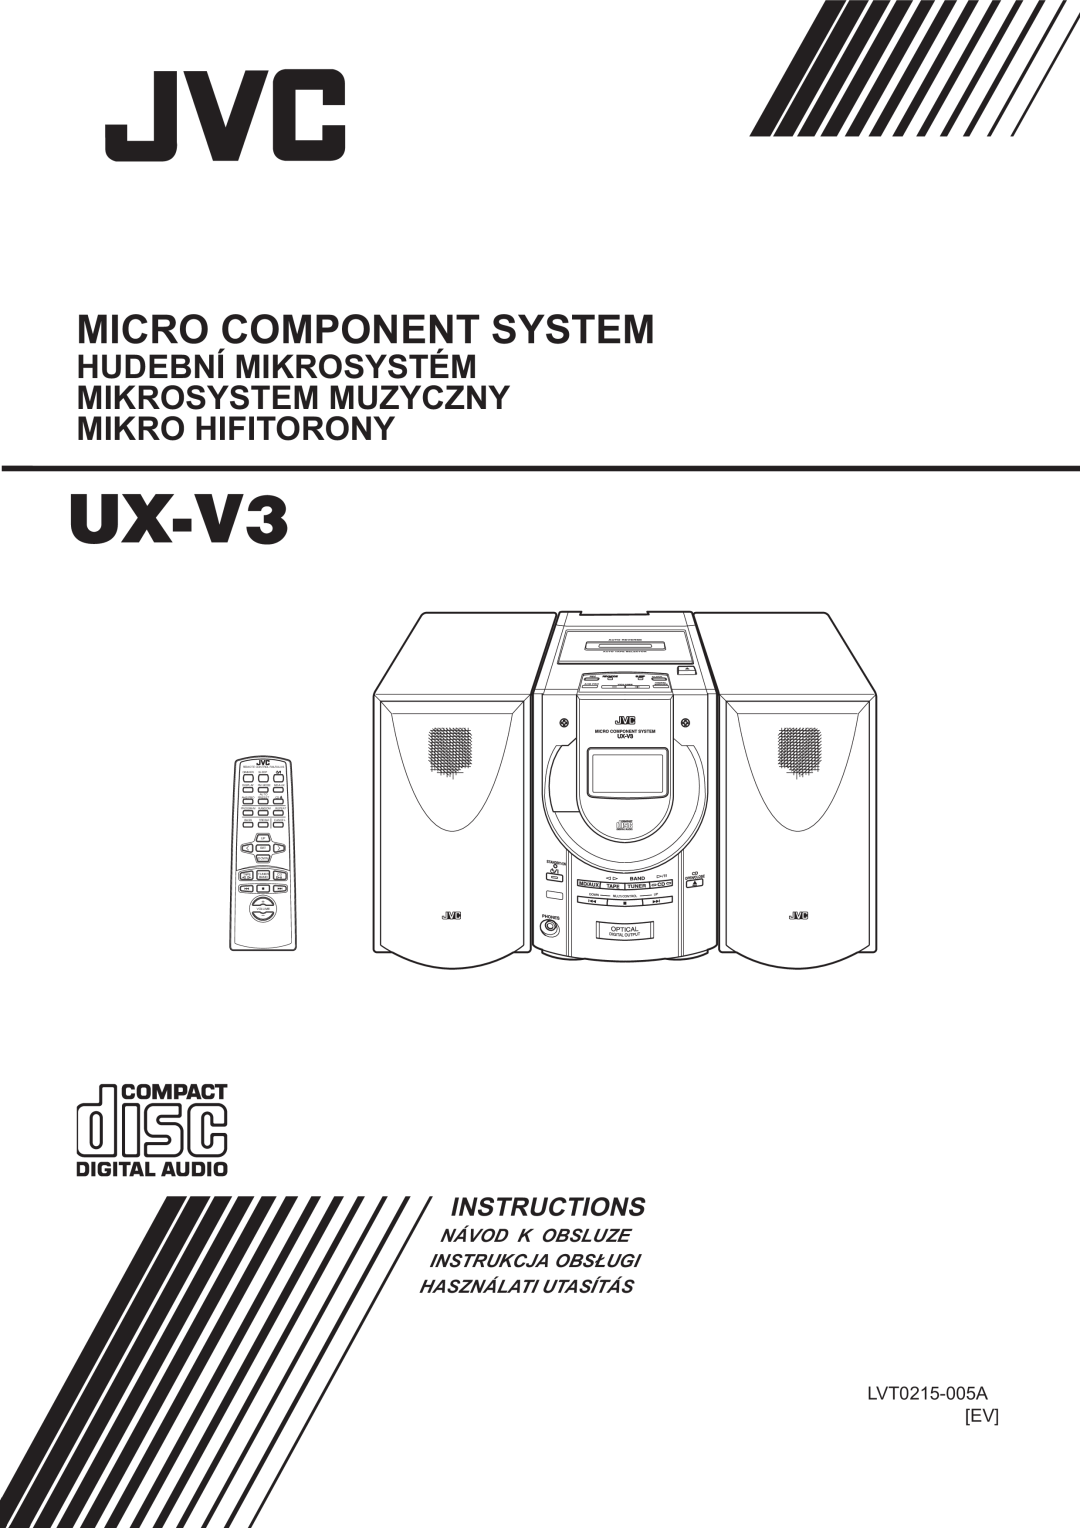 JVC UX-V3 manual Micro Component System, Instructions, Návod K Obsluze Instrukcja Obs£Ugi, Használati Utasítás 